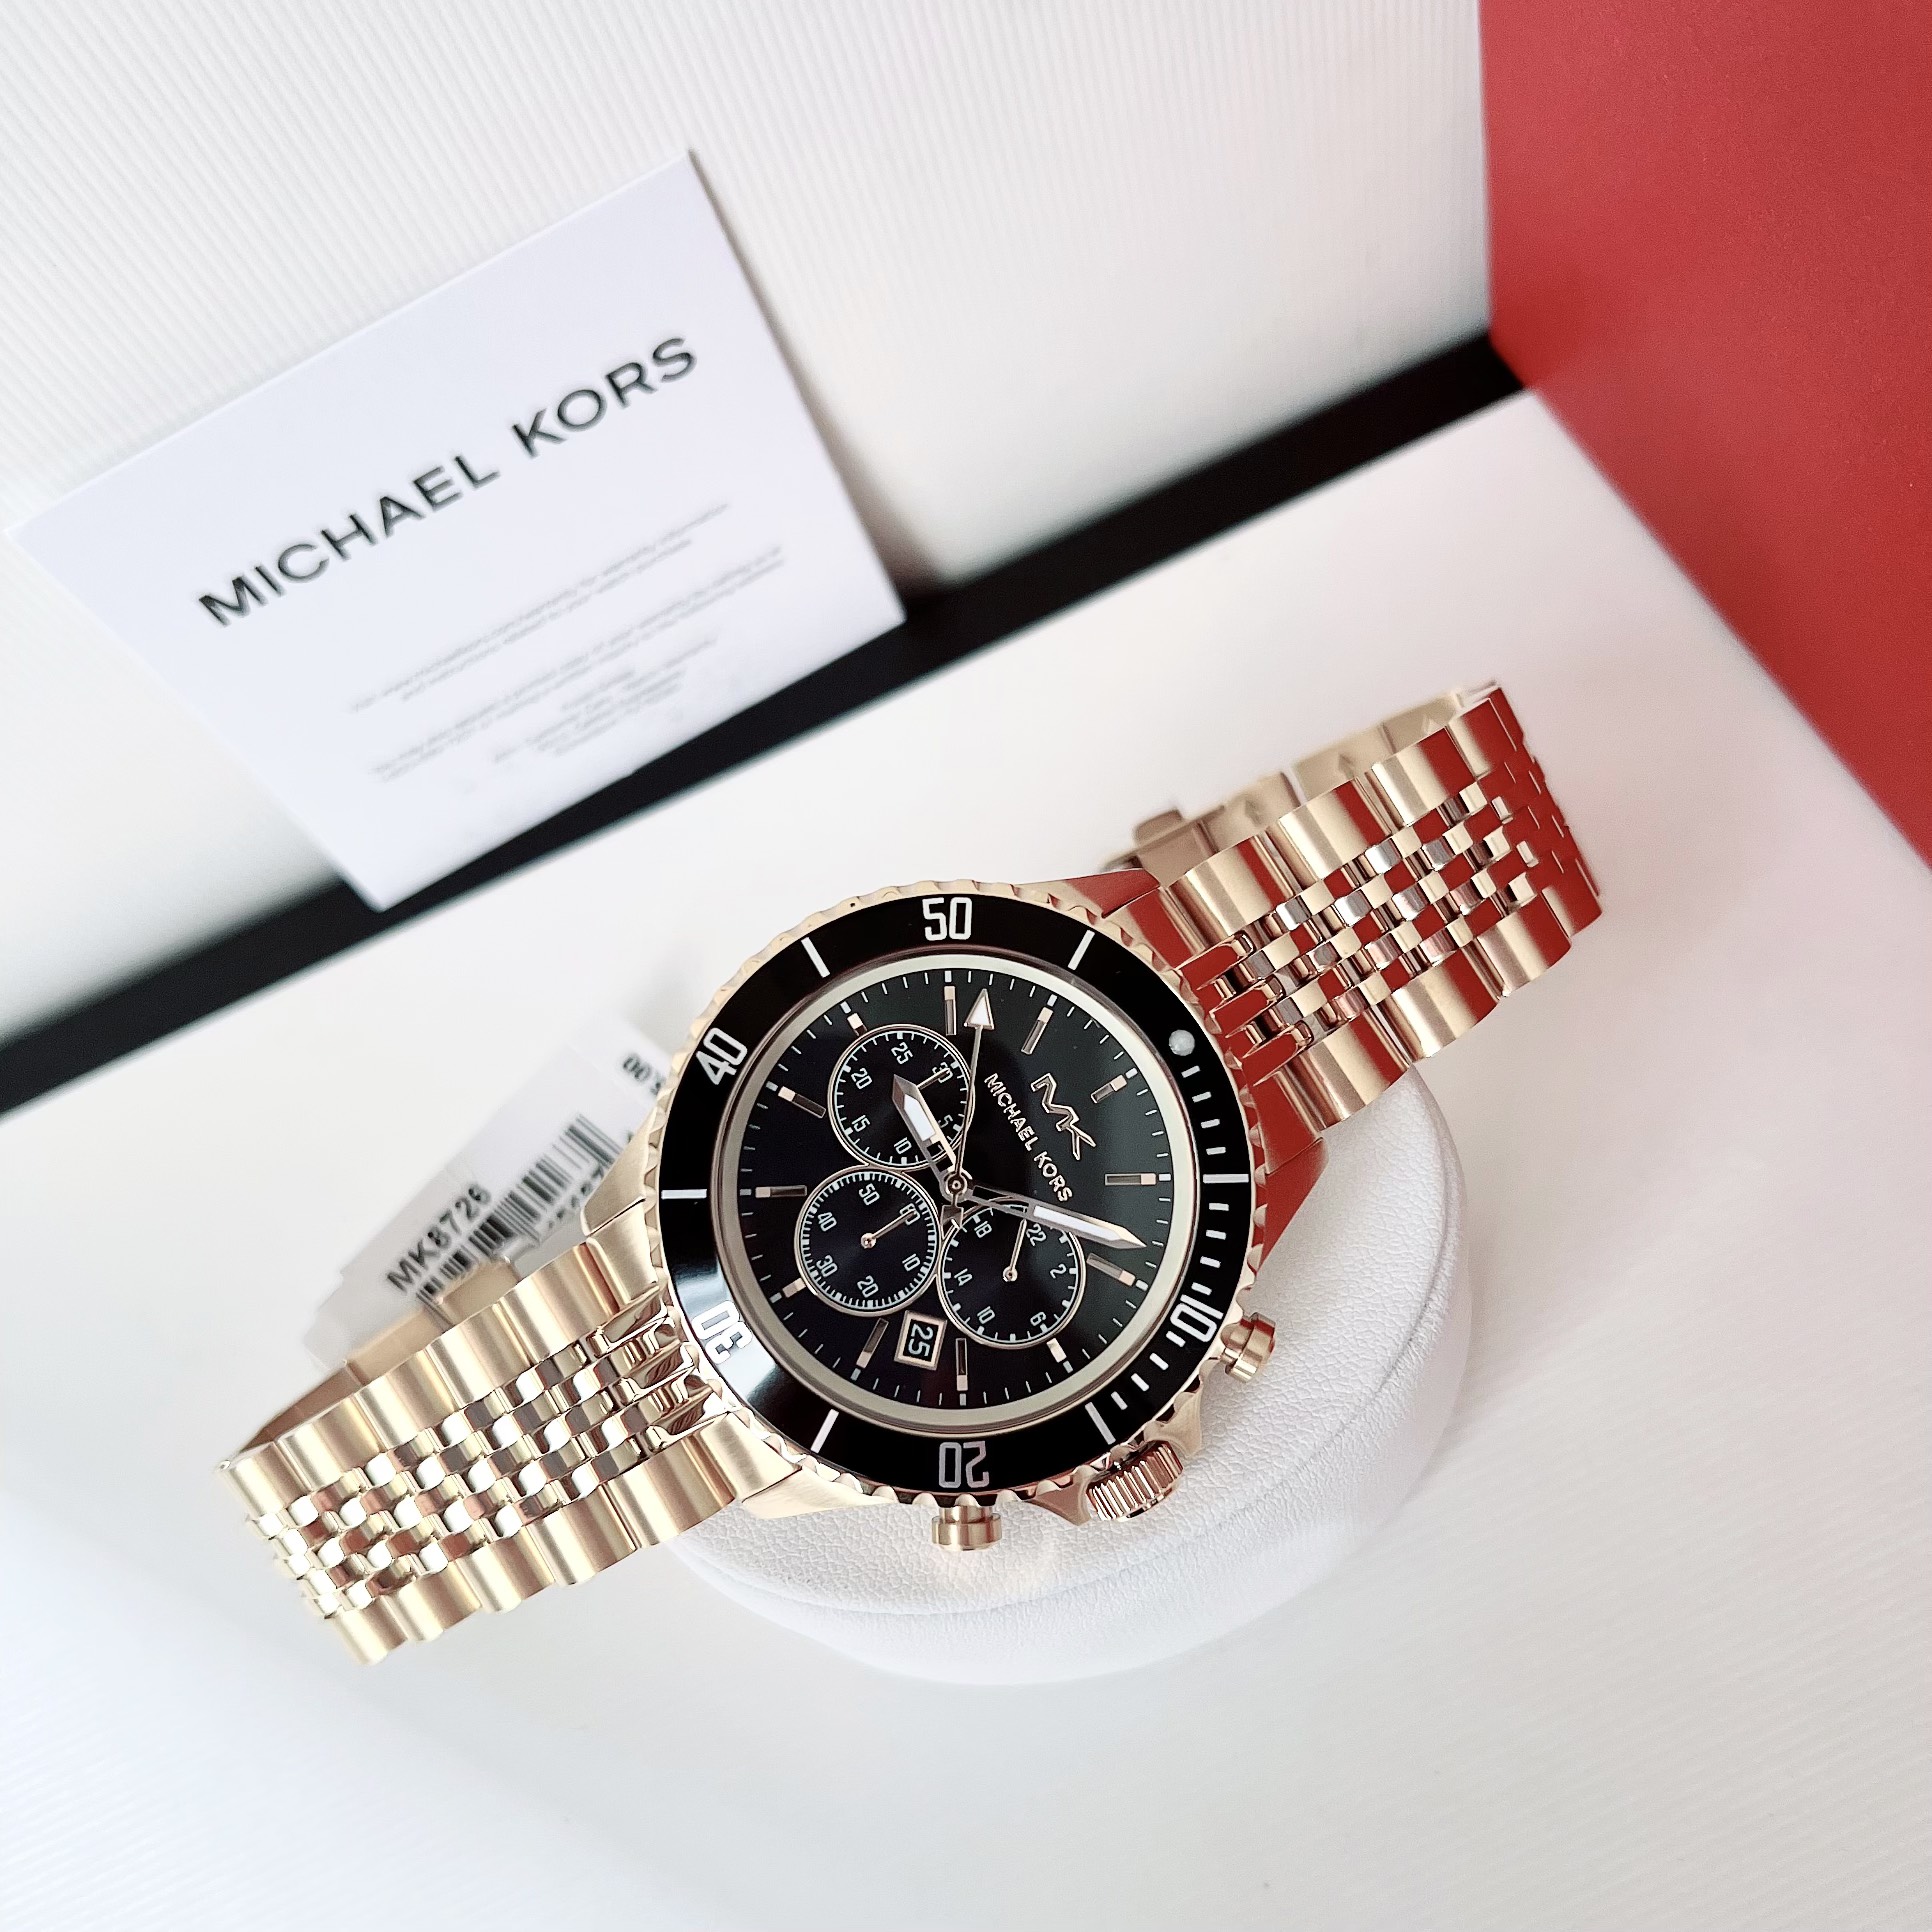 Đồng hồ Michael Kors Watch For Men - Thể hiện đẳng cấp và phong cách nam tính